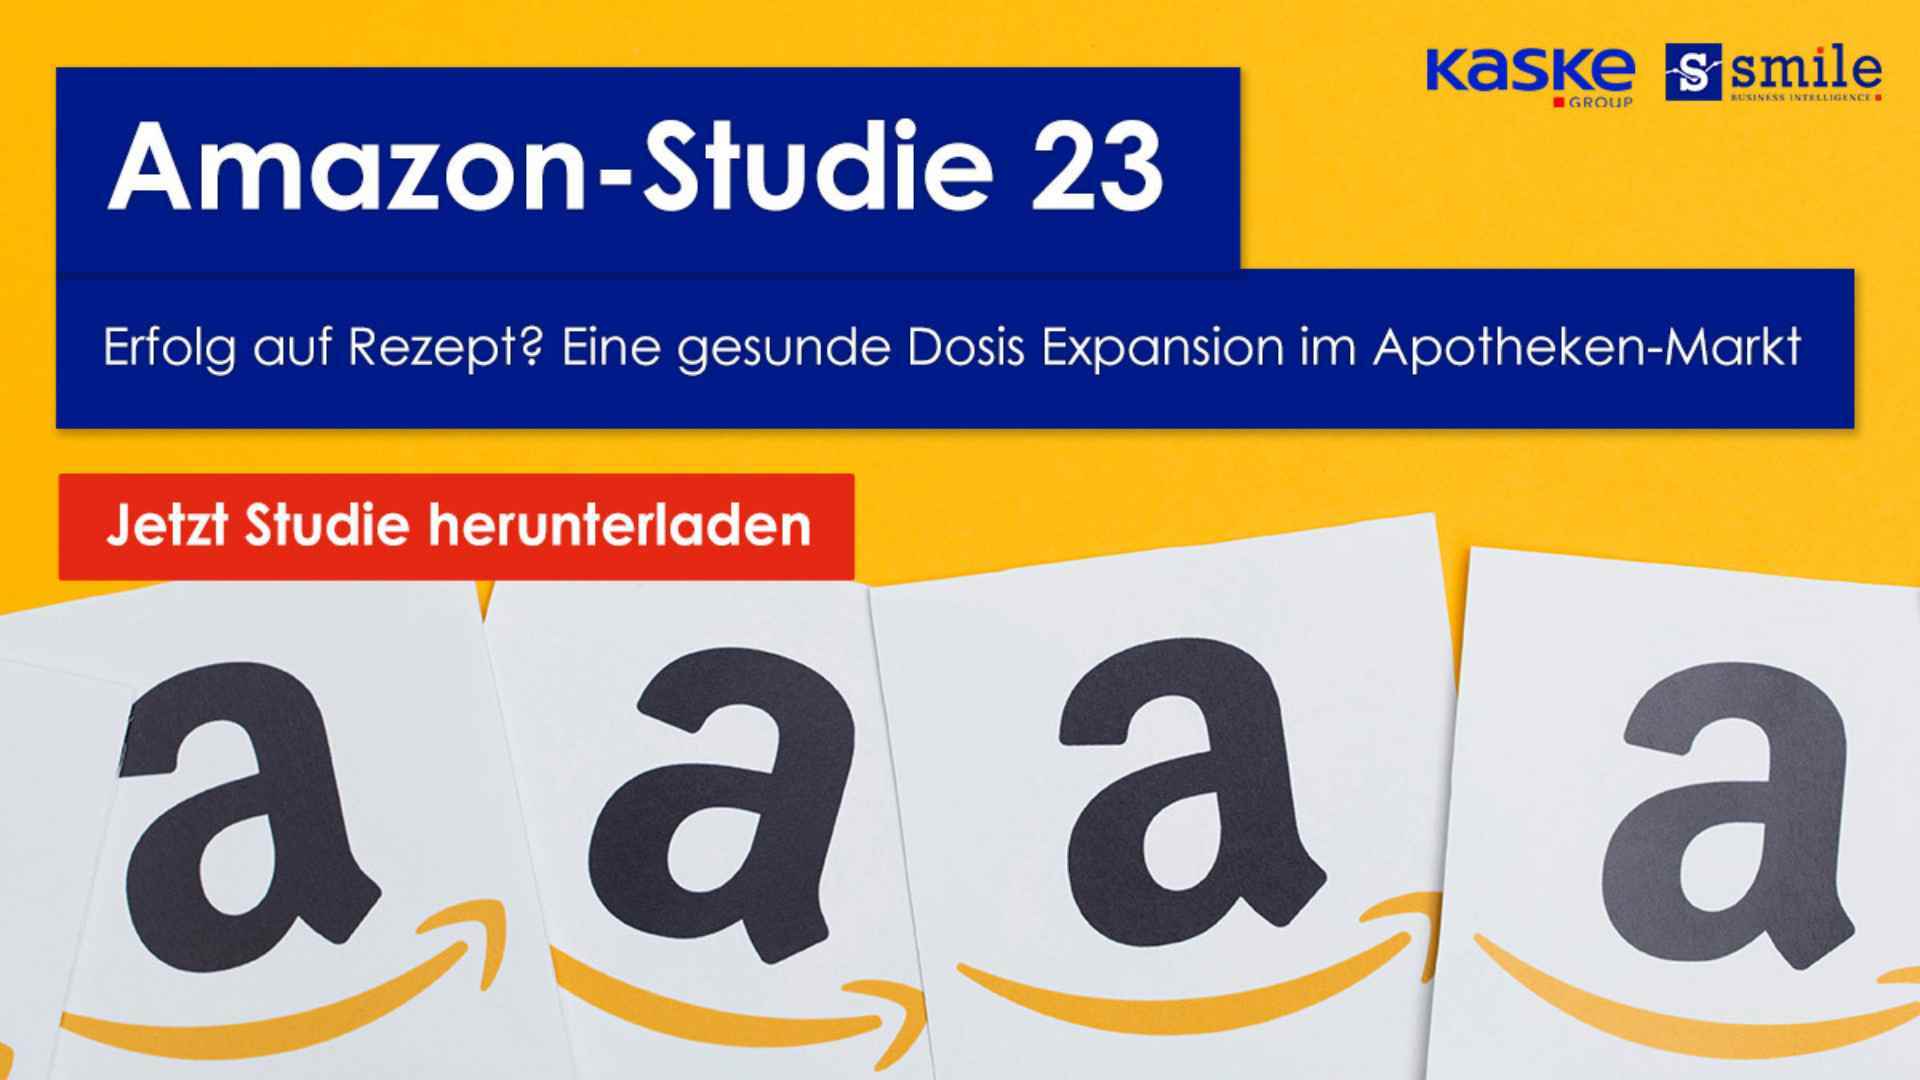 Amazon-Studie 23